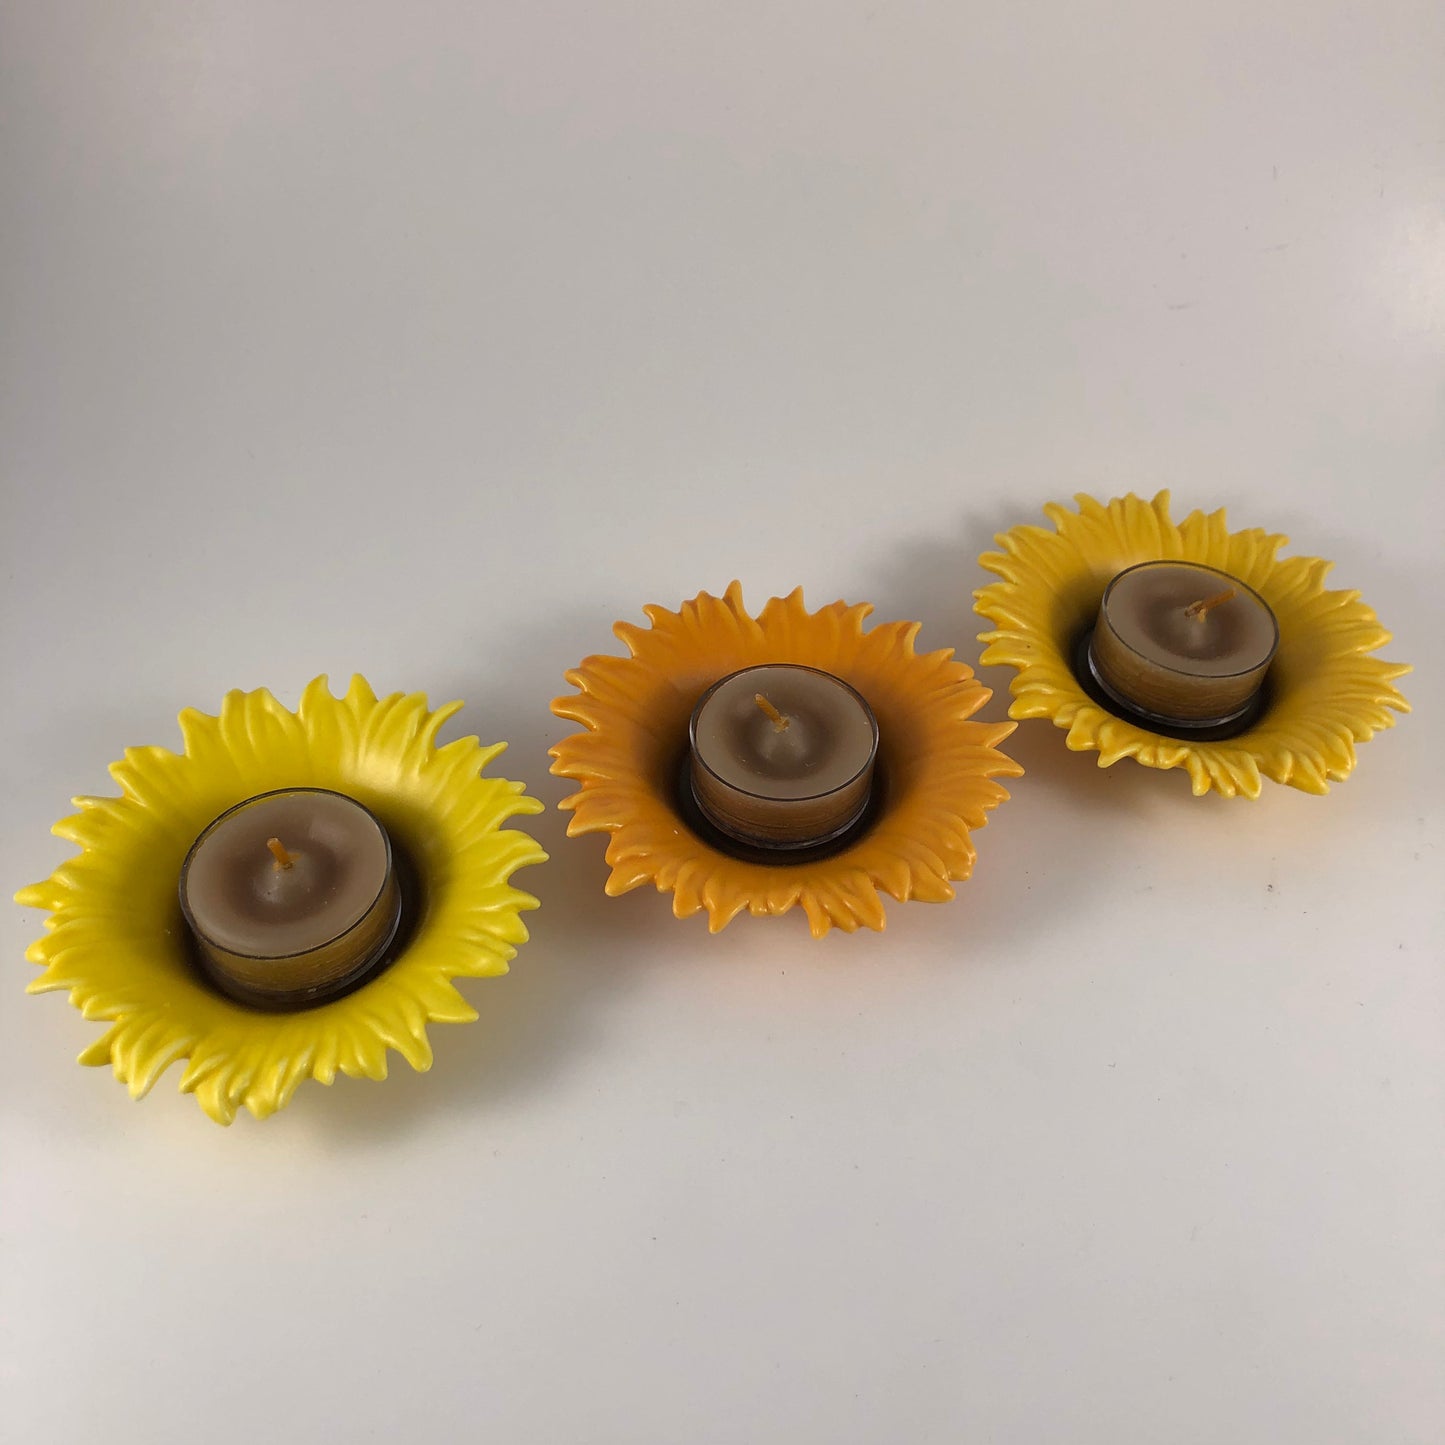 P90254 - Sunflower trio